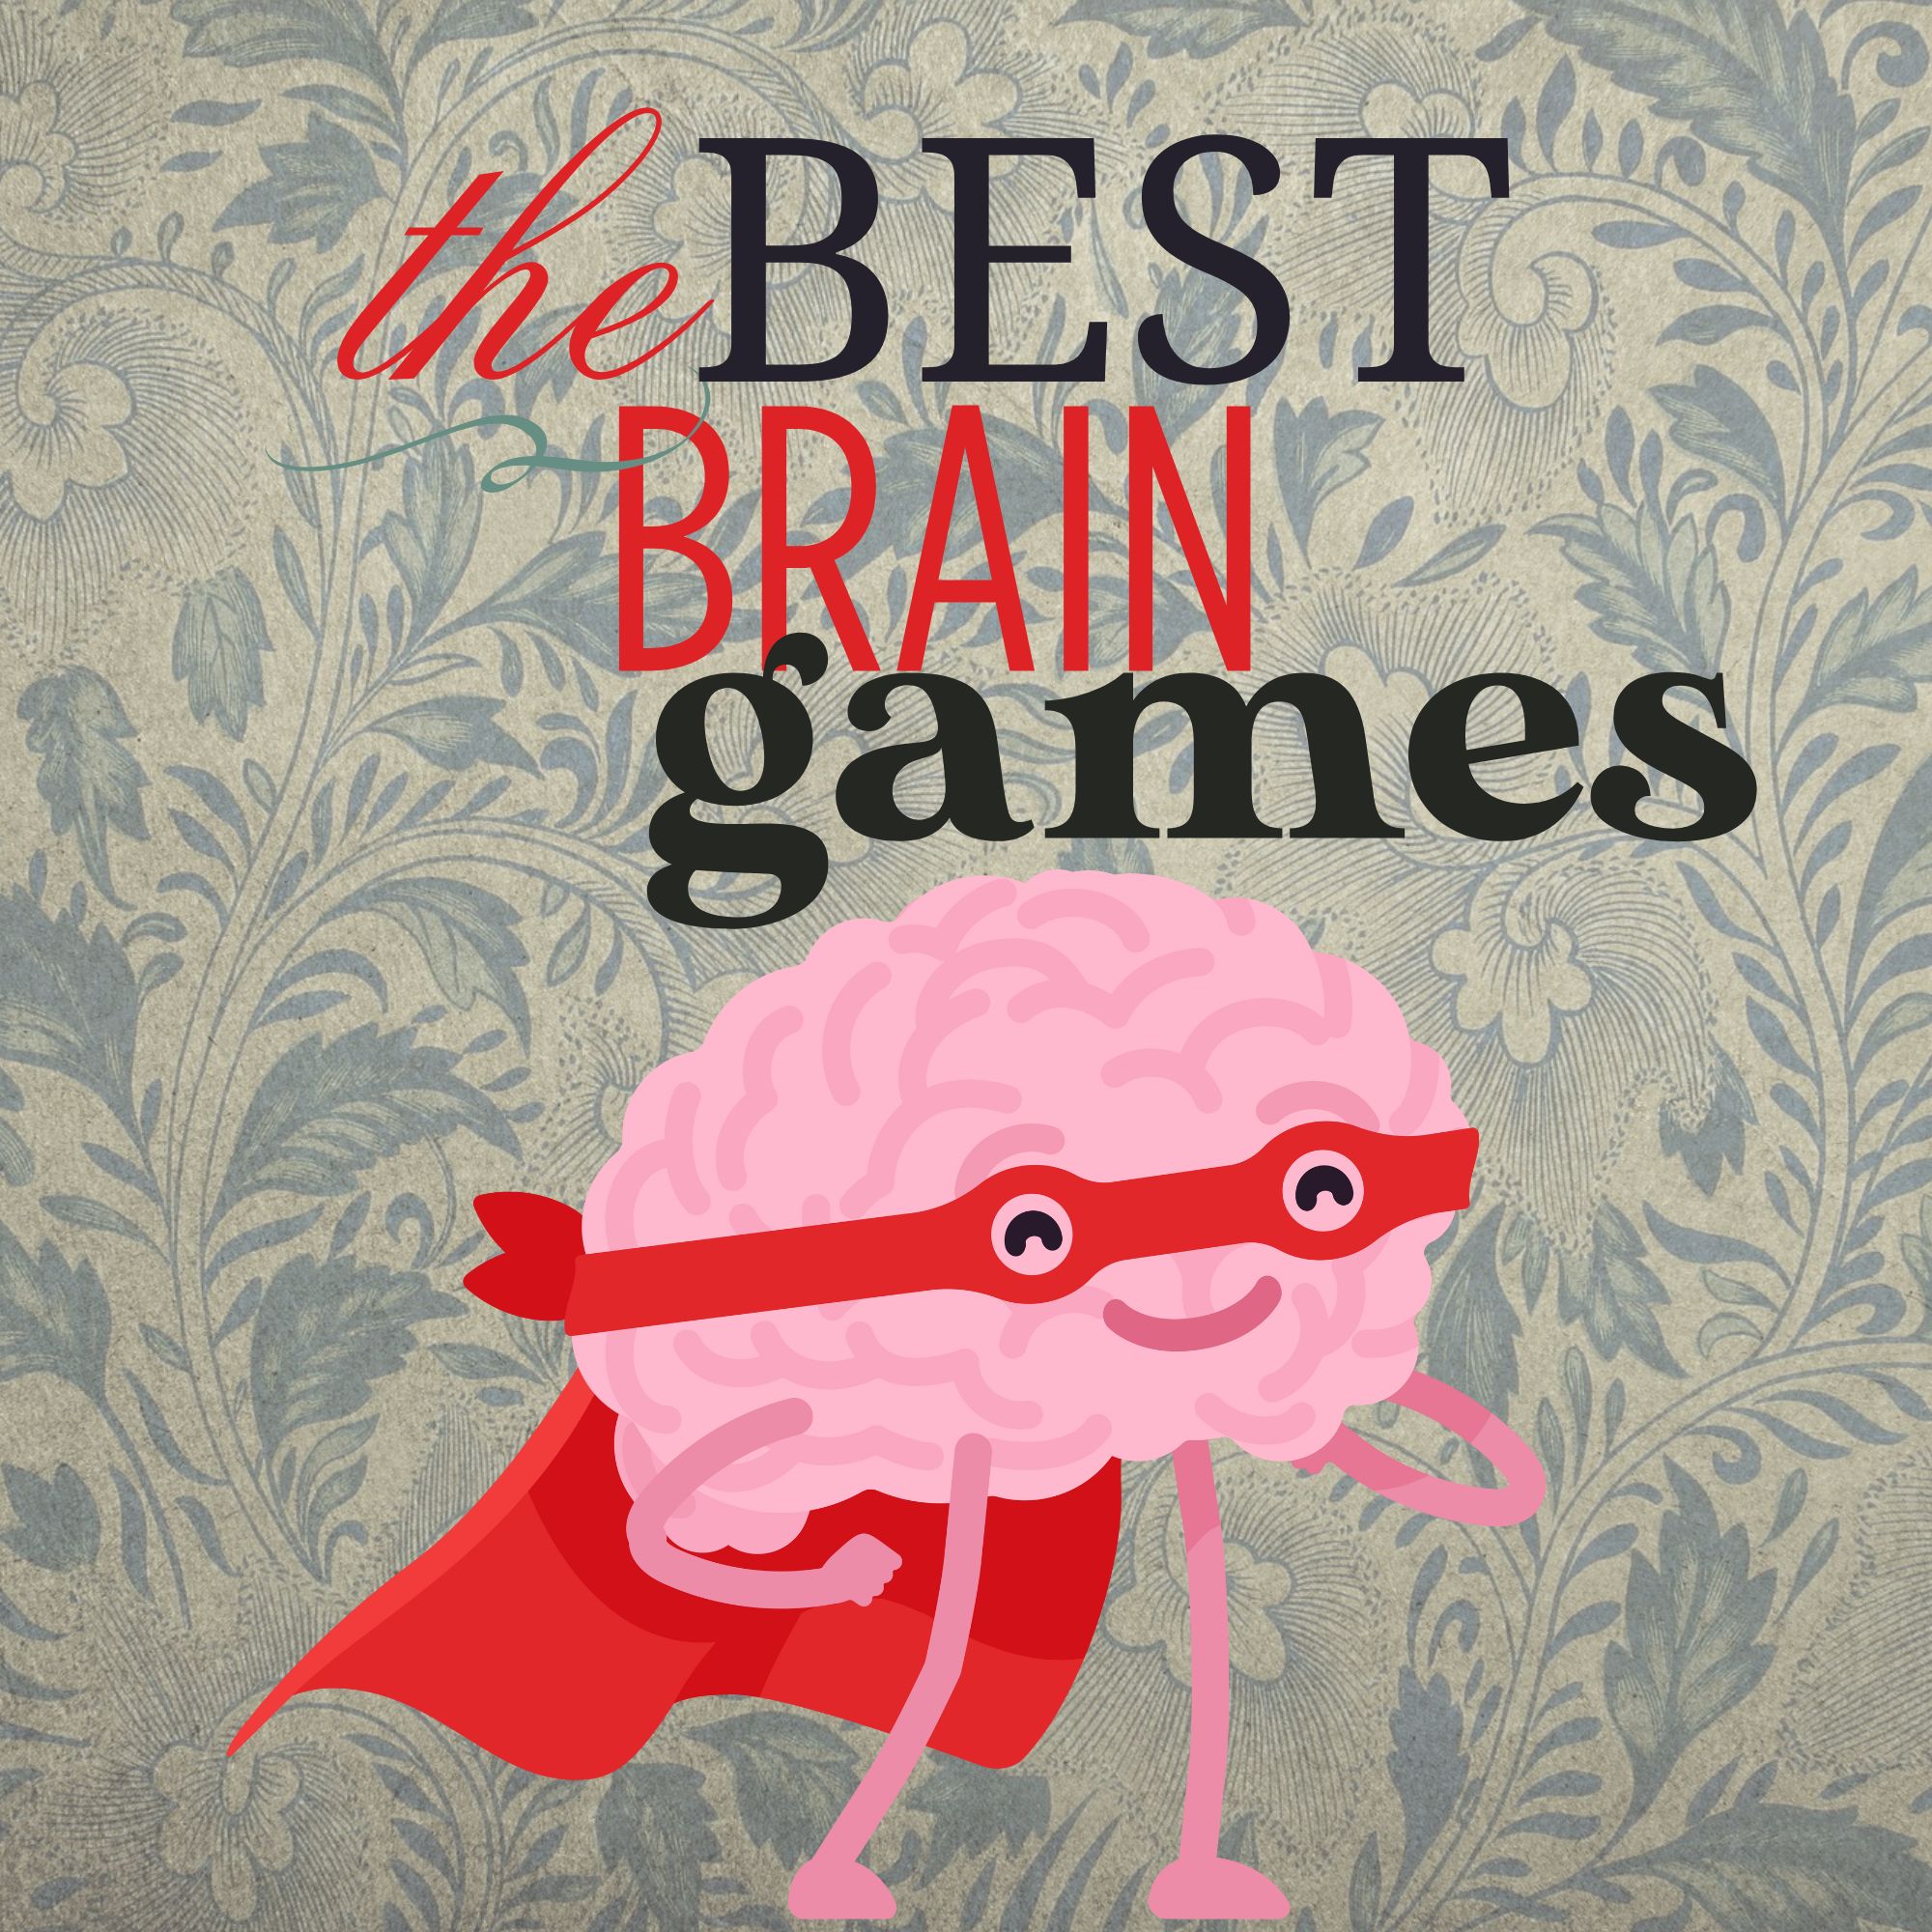 The Best Brain Games!